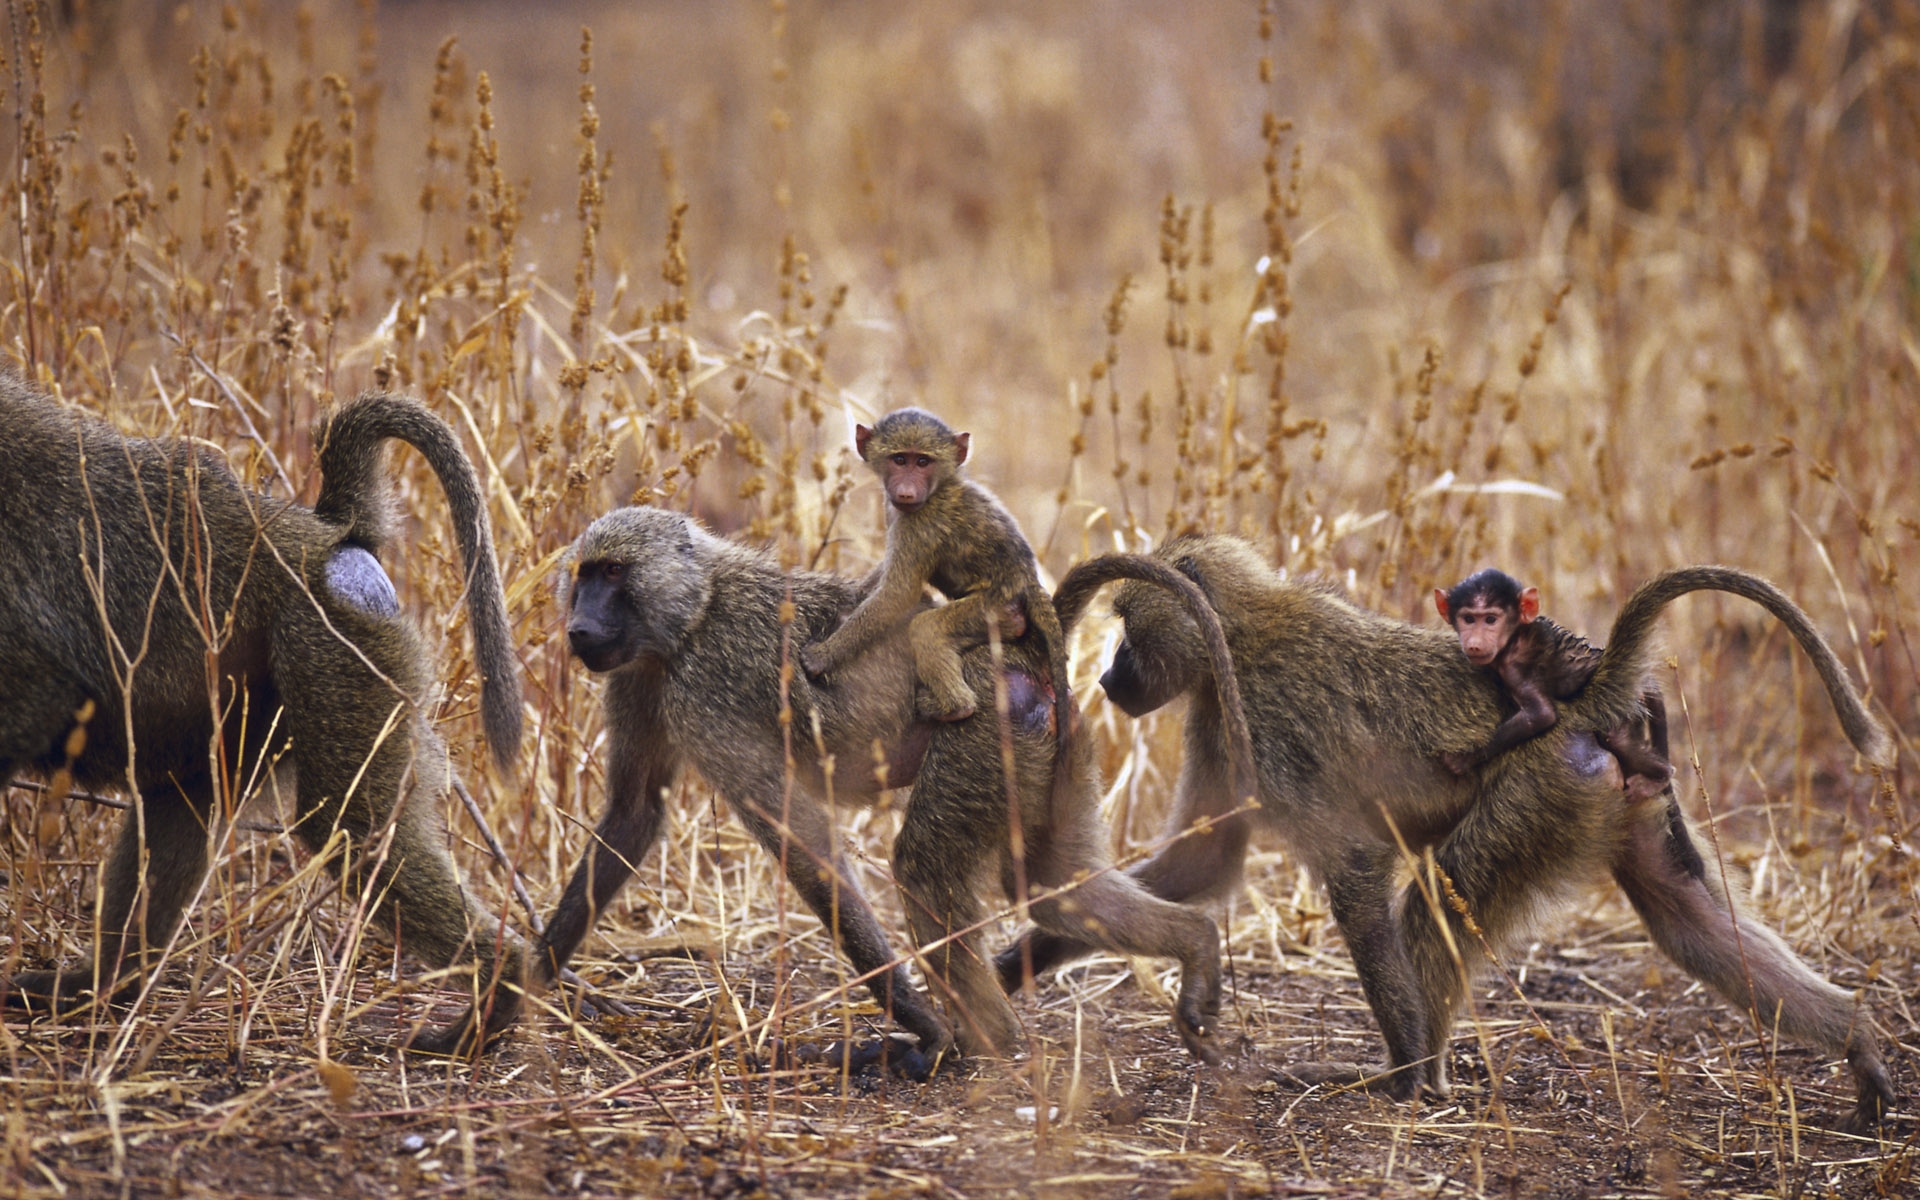 Monkey Hd Wallpaper - Wild Monkeys In Africa , HD Wallpaper & Backgrounds